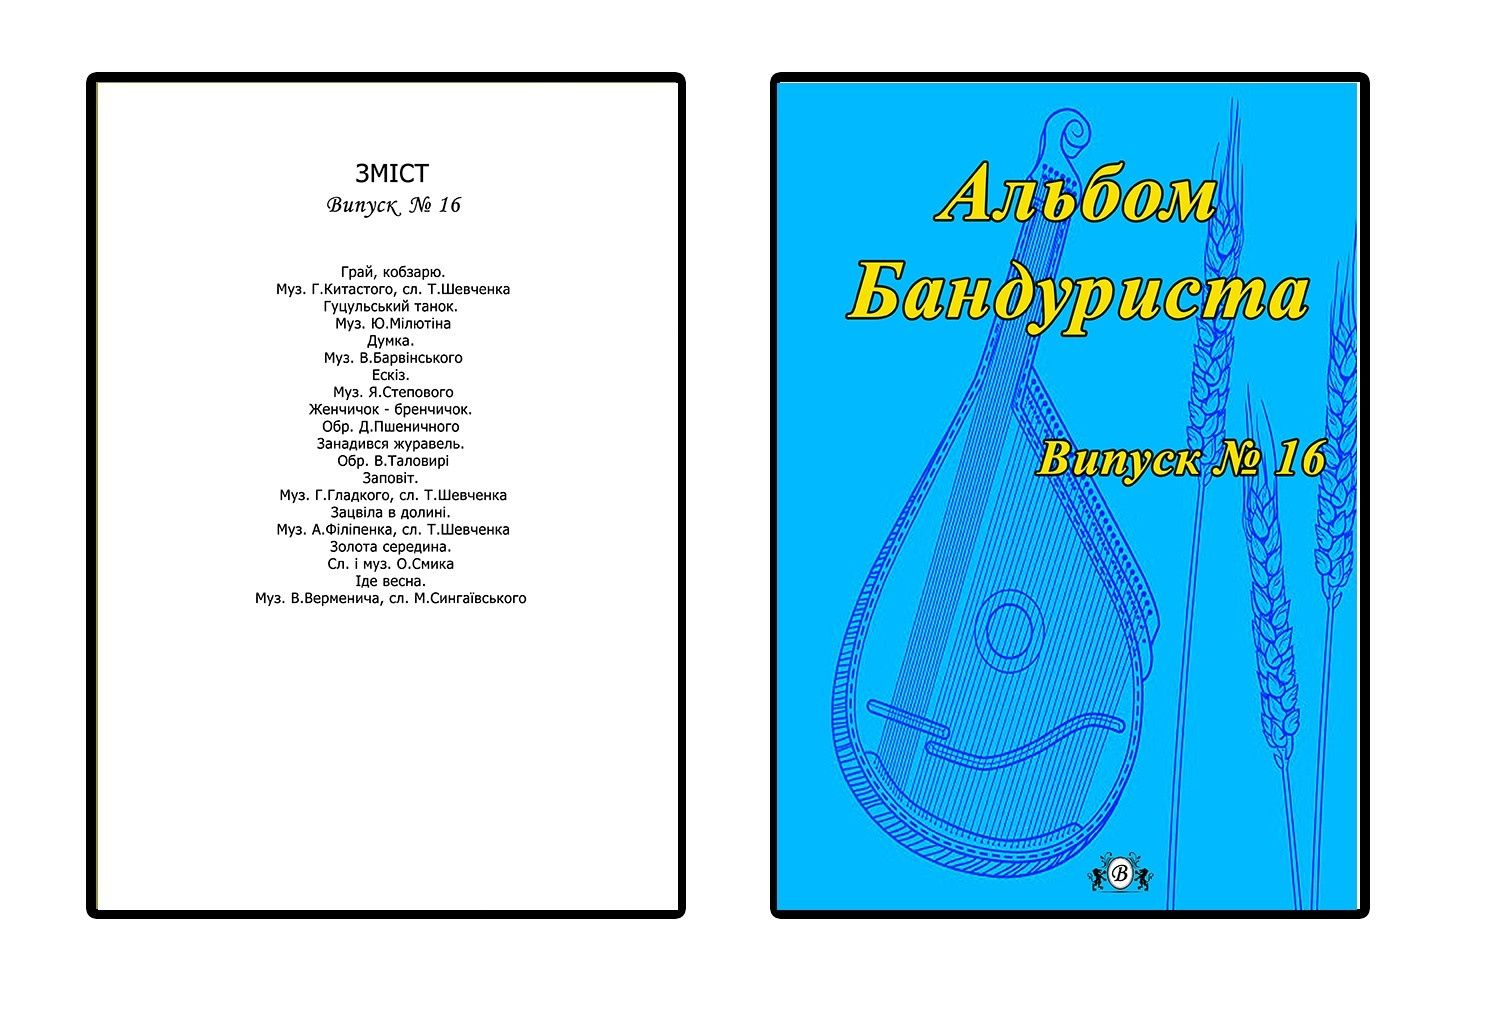 Ноти для Бандури
Альбом Бандуриста
15-16-17-18-19-20-21 выпуск. 
Для в